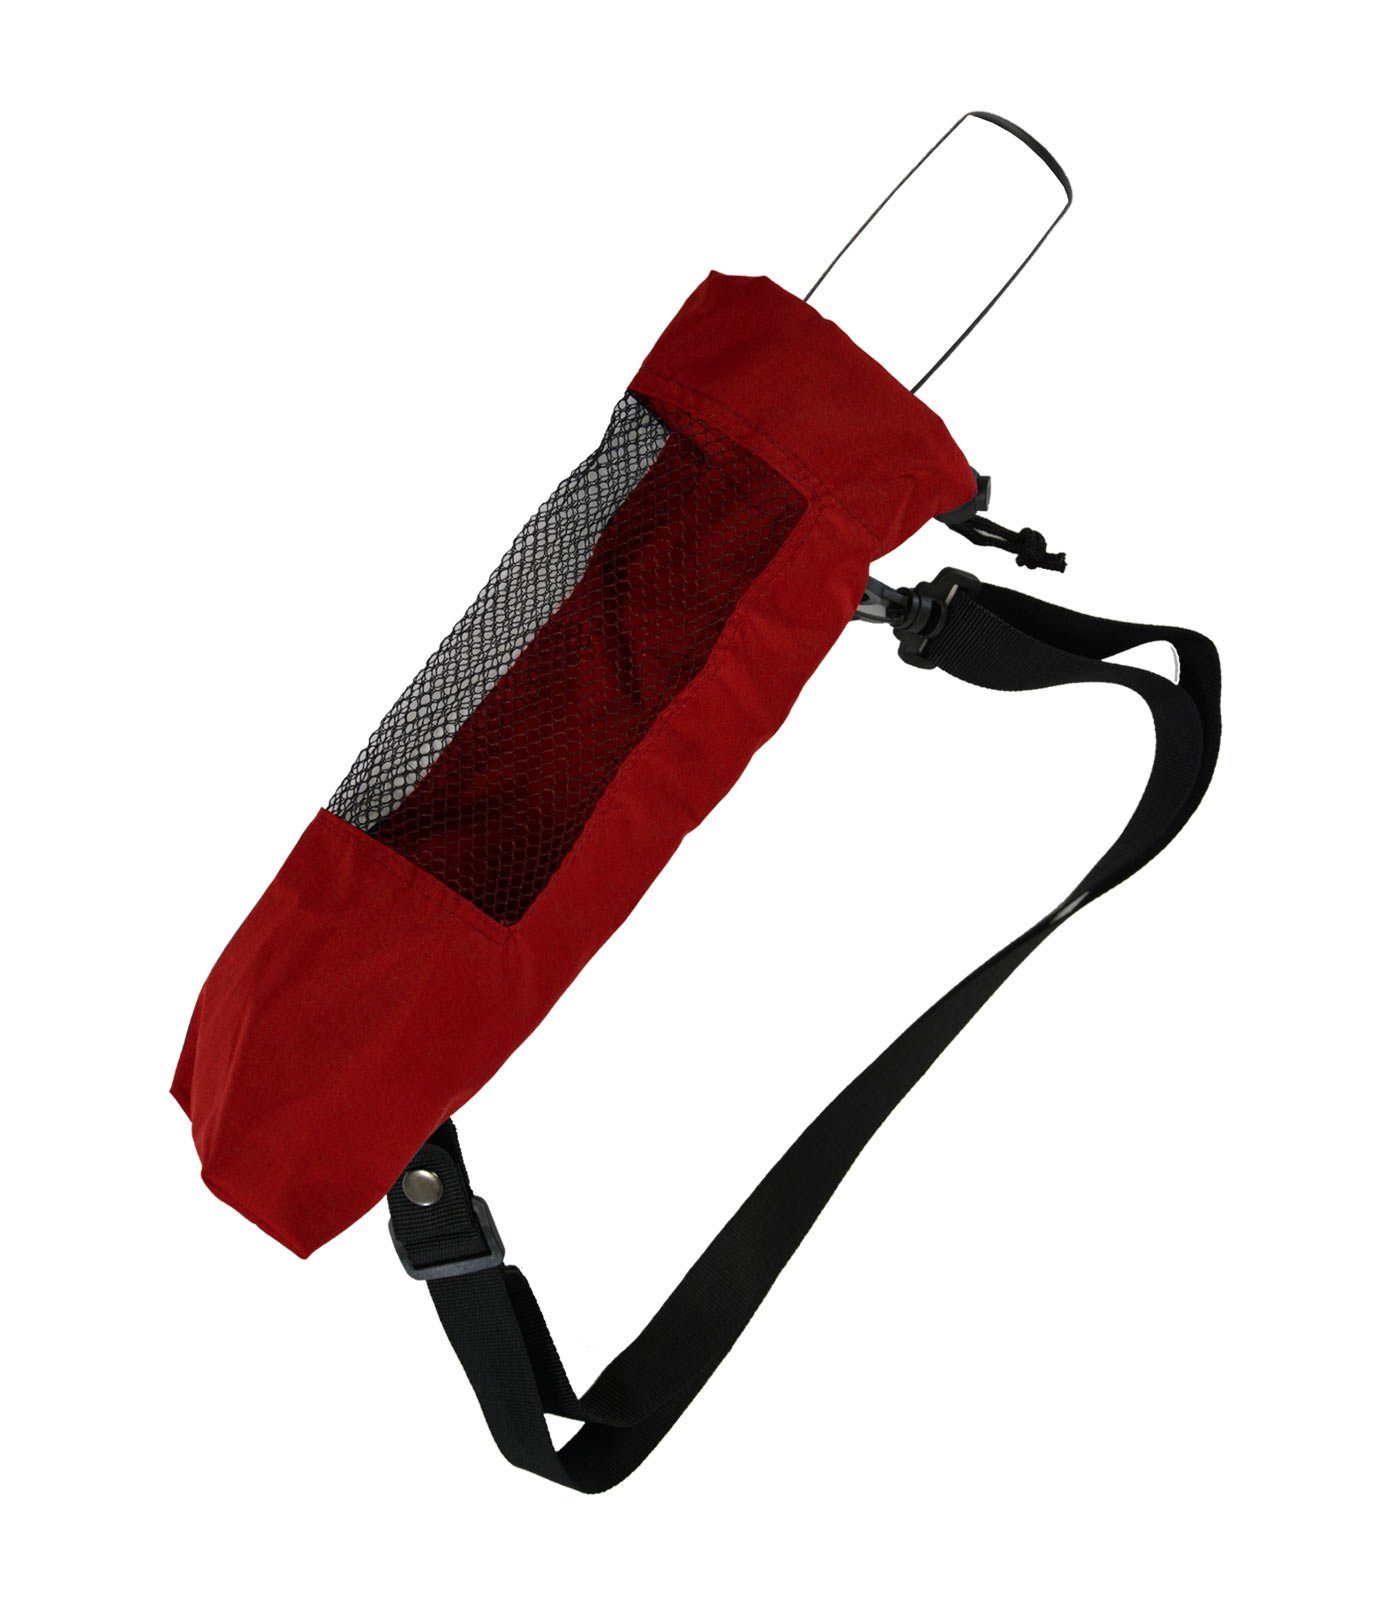 iX-brella Taschenregenschirm Trekking für innovativ zum Taschenschirme, Hülle Umhängen rot